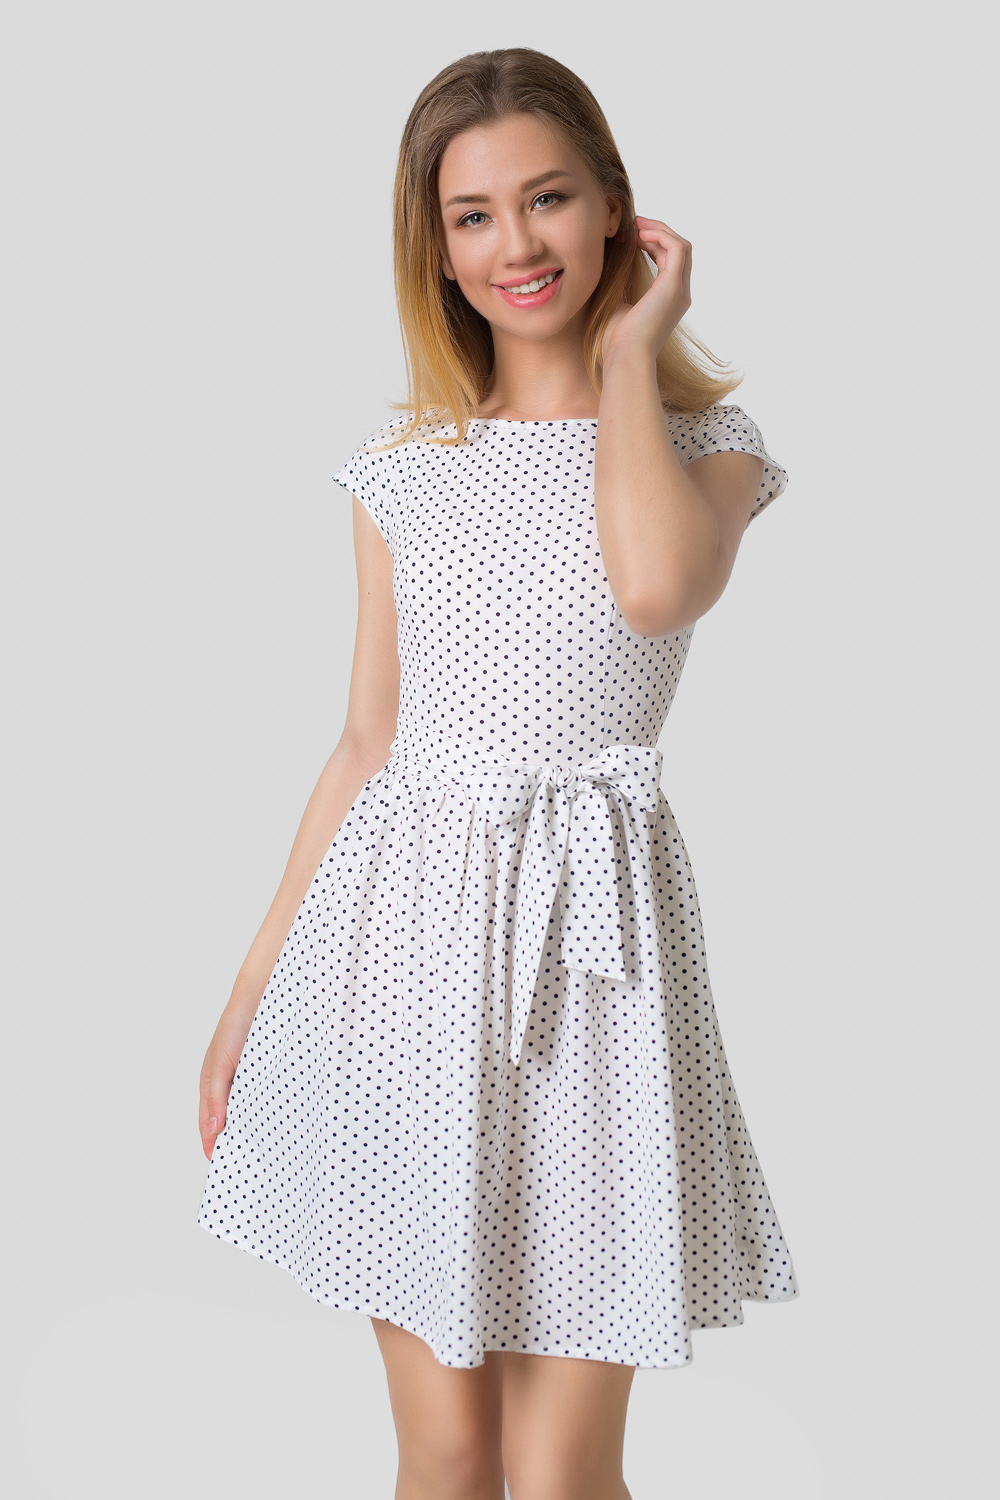 White polka dot dress